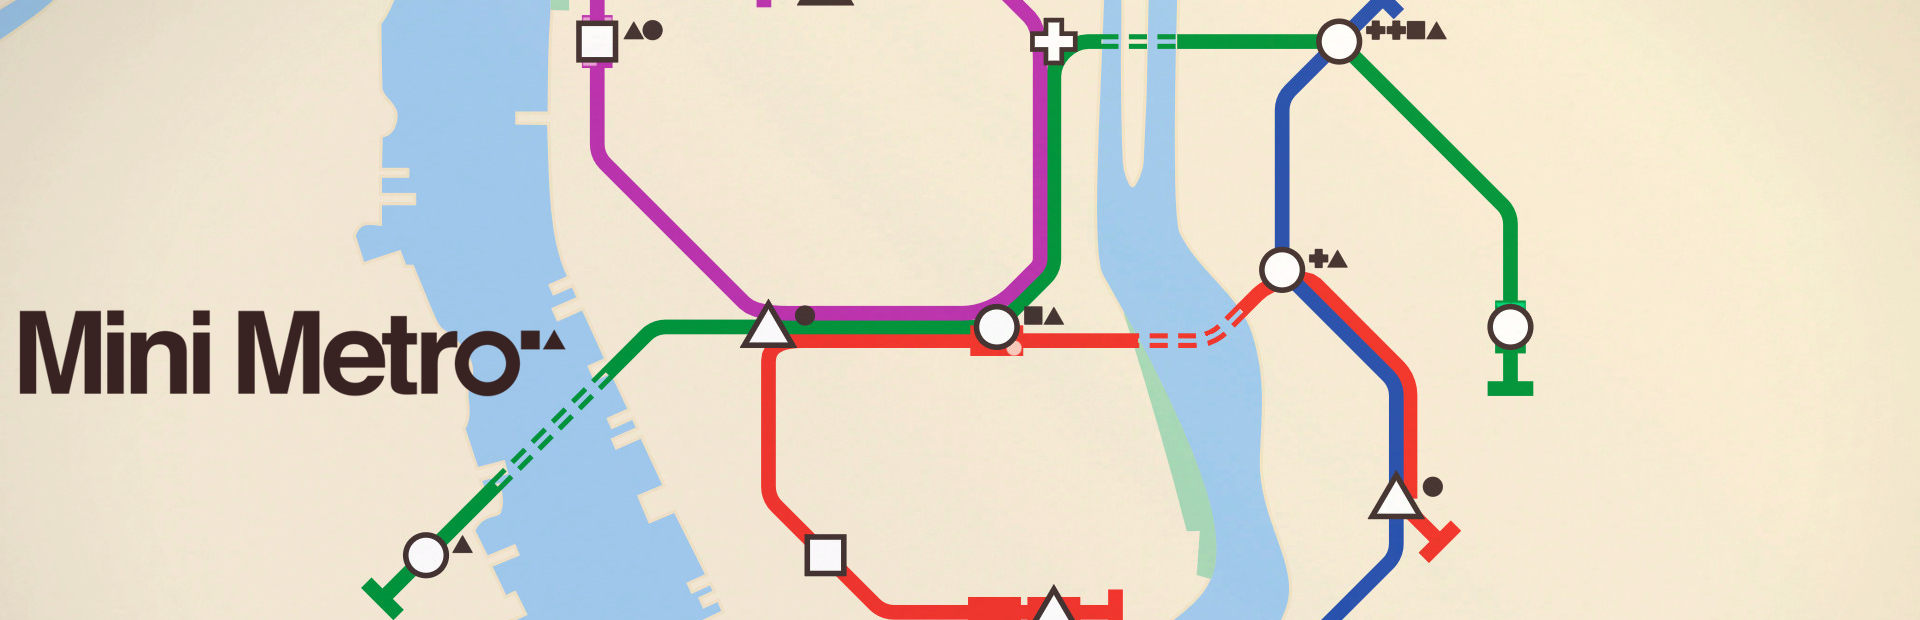 دانلود بازی Mini Metro برای پی سی | گیمباتو